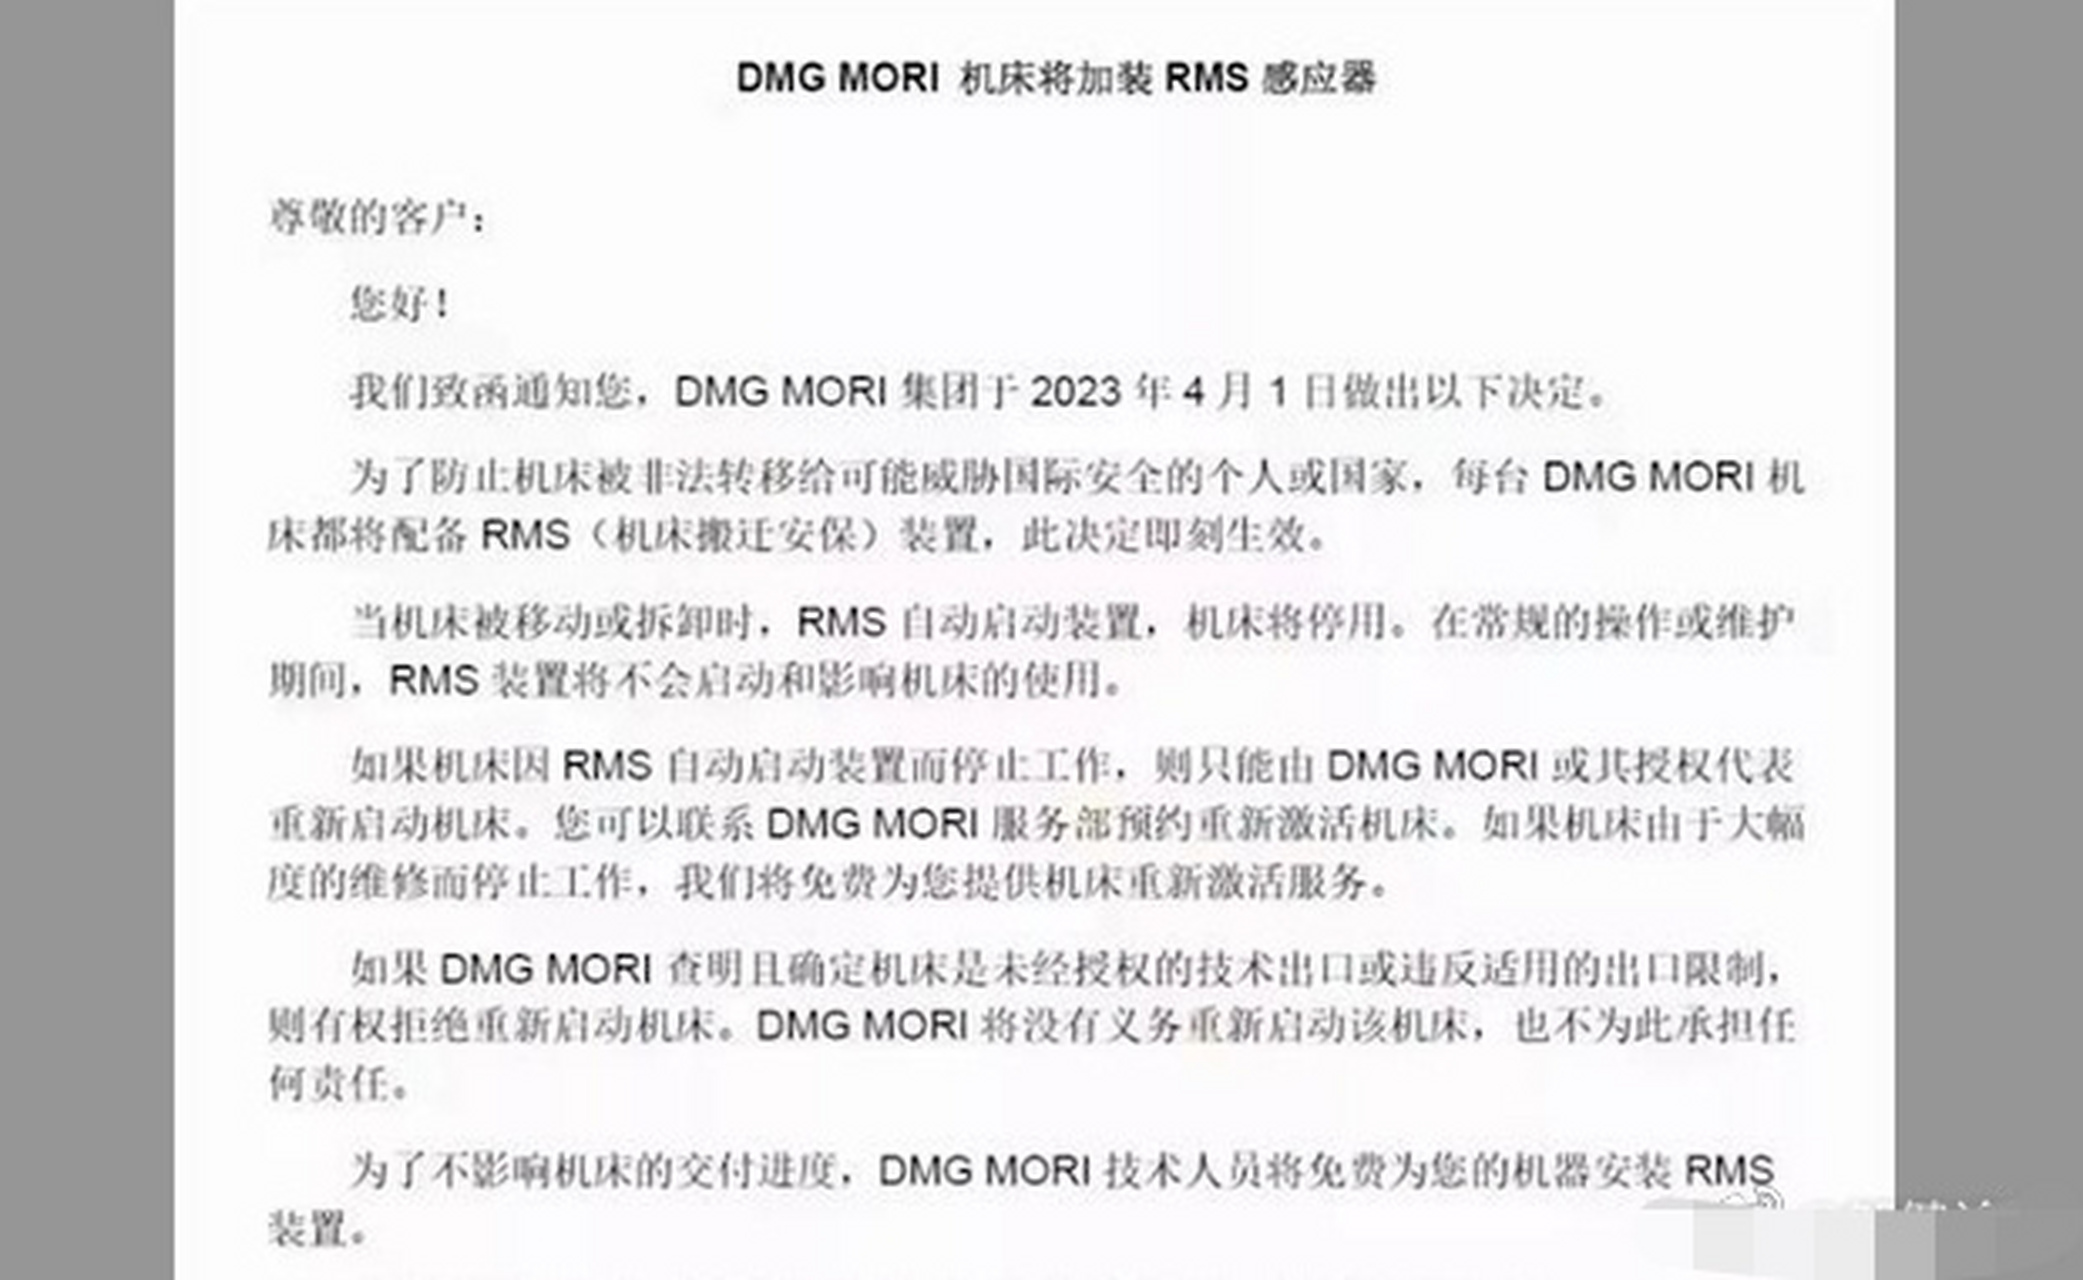 德国机床公司德玛吉(dmg mori)日前通知其在中国的企业,从2023年起对